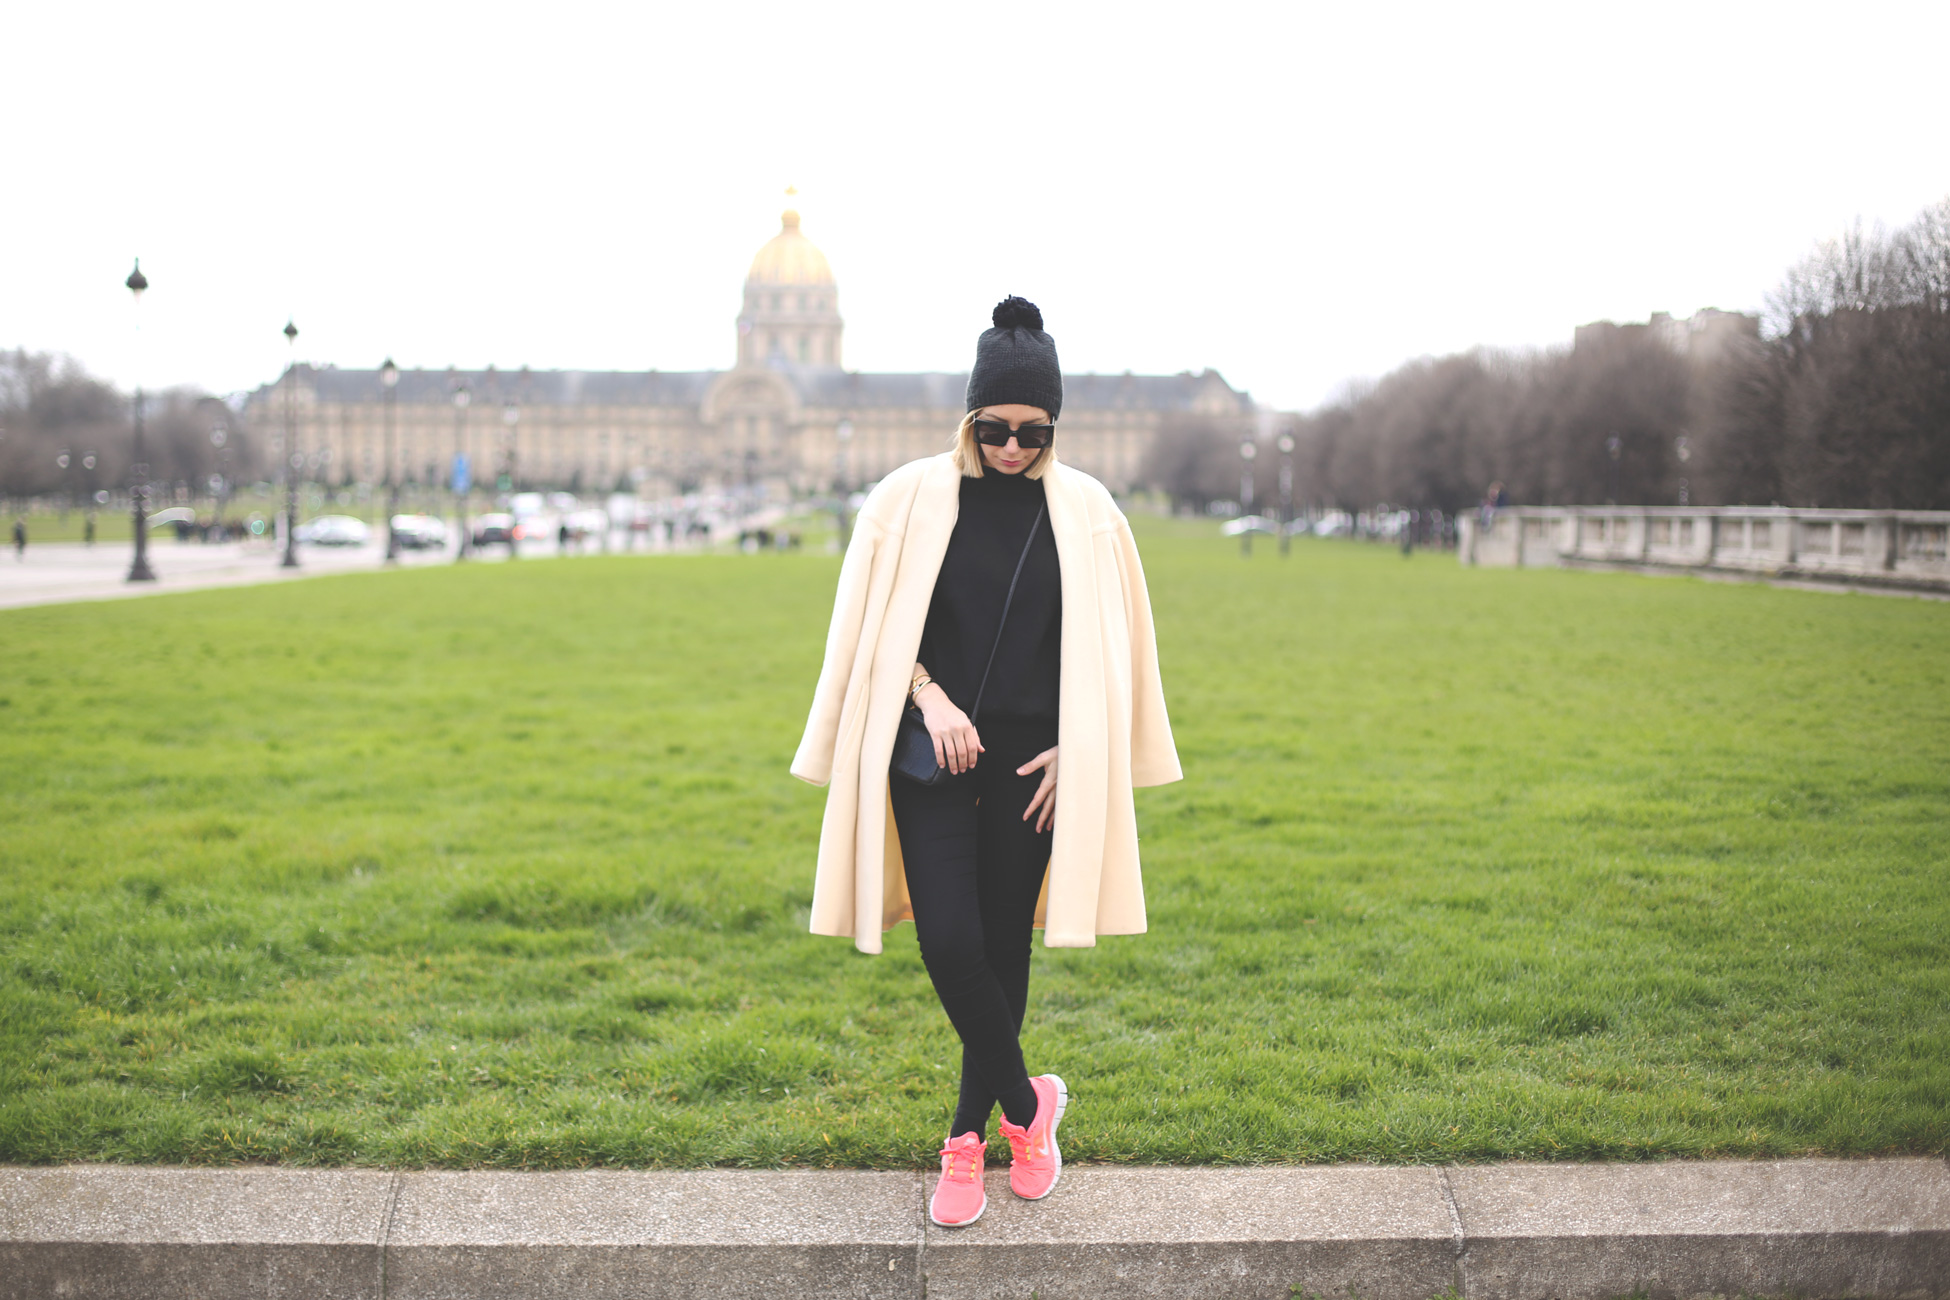 Paris, Travel, Fashion Blogger, blonde, black look, beige coat, beanie, trip look, trend, sneakers, nike,